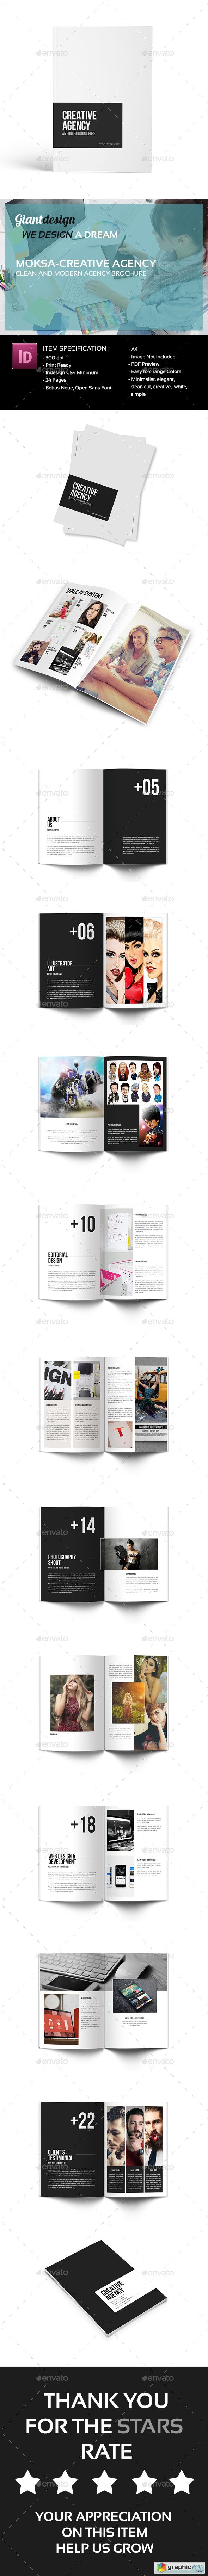 Creative Agency - A4 Portfolio Brochure